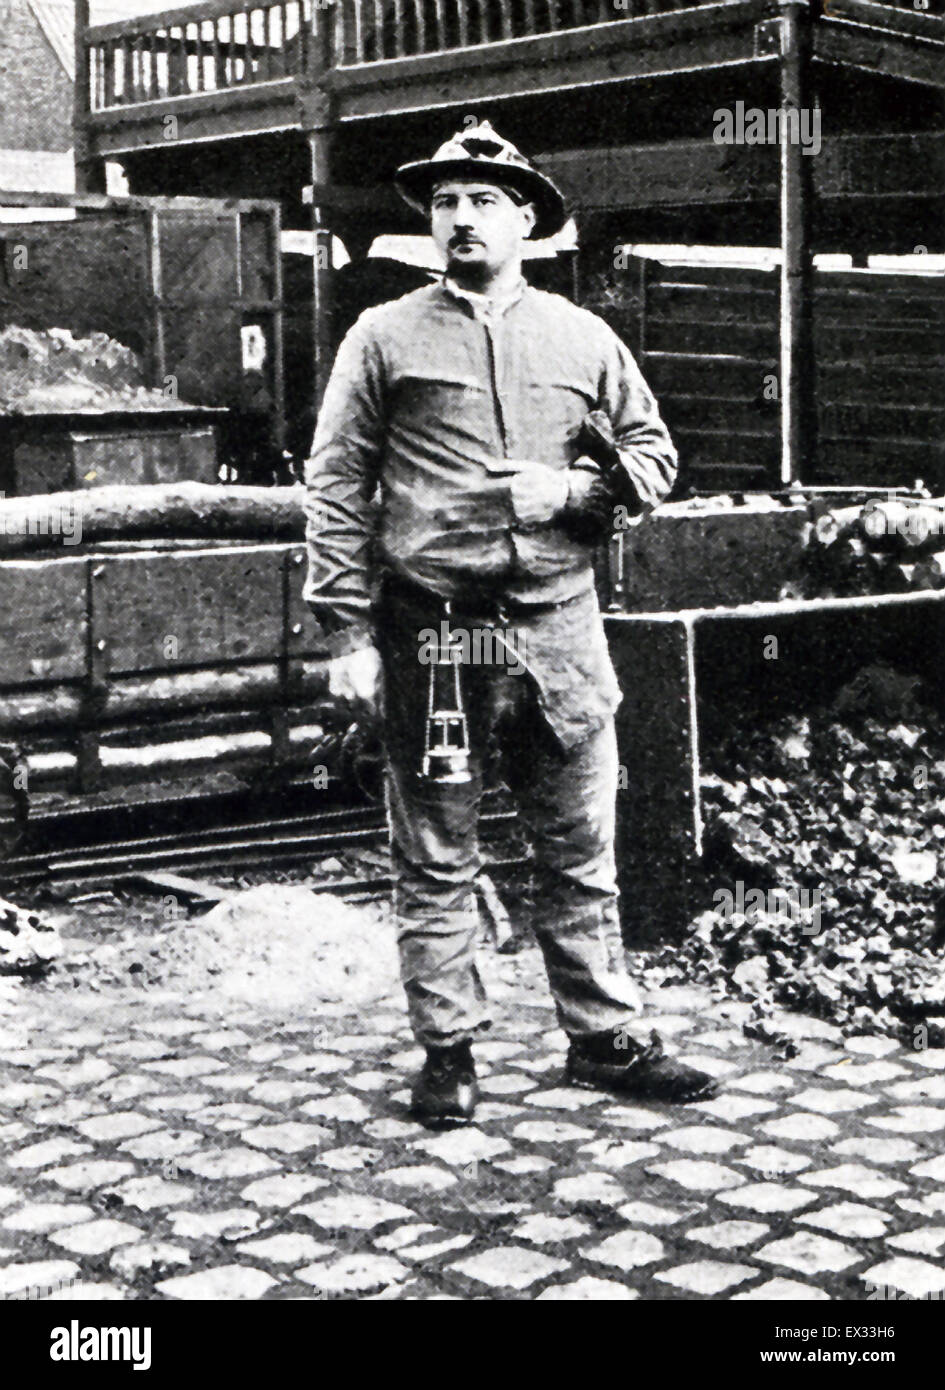 Esta foto muestra una minera flamenca, con su linterna colgando de su cinturón, fuera de una mina. La foto data de 1906. Se refiere a la gente flamenca de Flandes, una región histórica del noroeste de Europa que incluye partes de la actual Francia norte, oeste y suroeste de Bélgica, Países Bajos a lo largo del Mar del Norte. Foto de stock